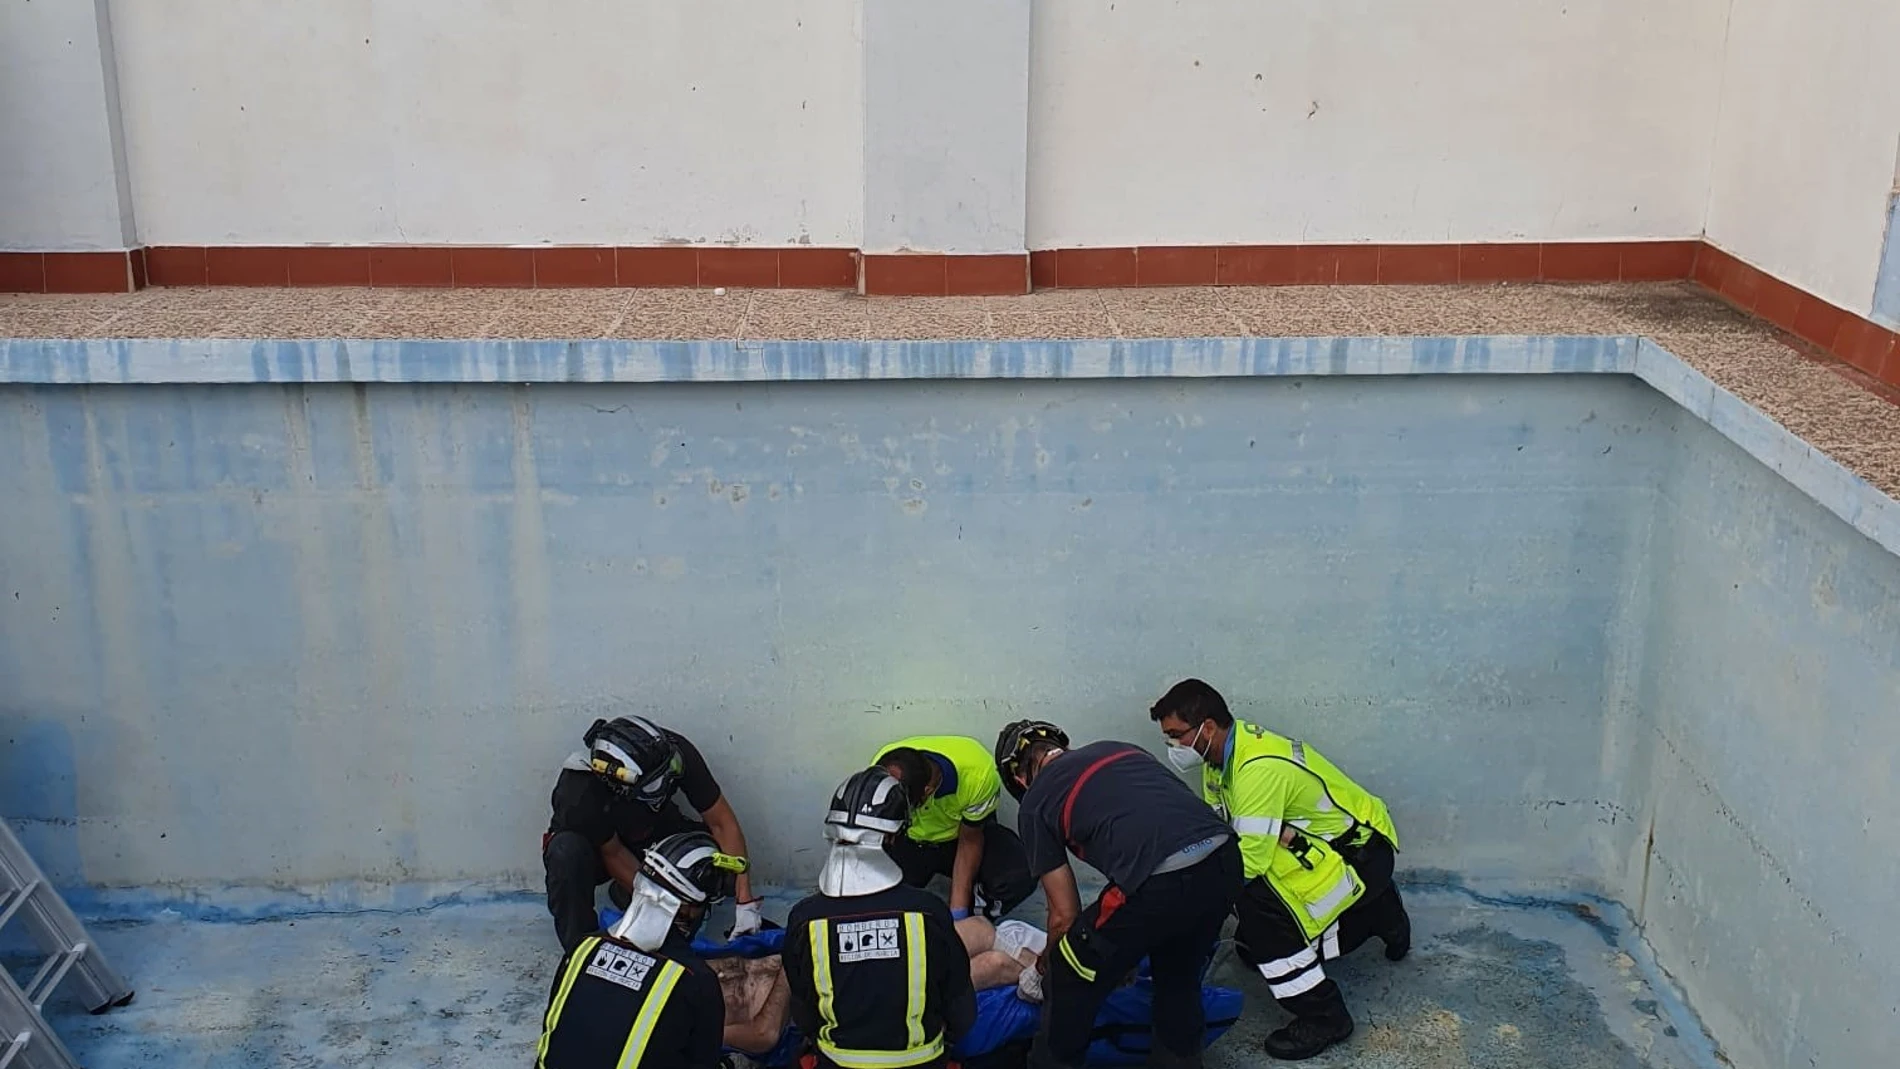 Servicios de emergencia rescatan y trasladan al hospital a un hombre gravemente herido al caer a una piscina vacía, en CiezaIMÁGENES FACILITADAS POR EL CEIS16/06/2021